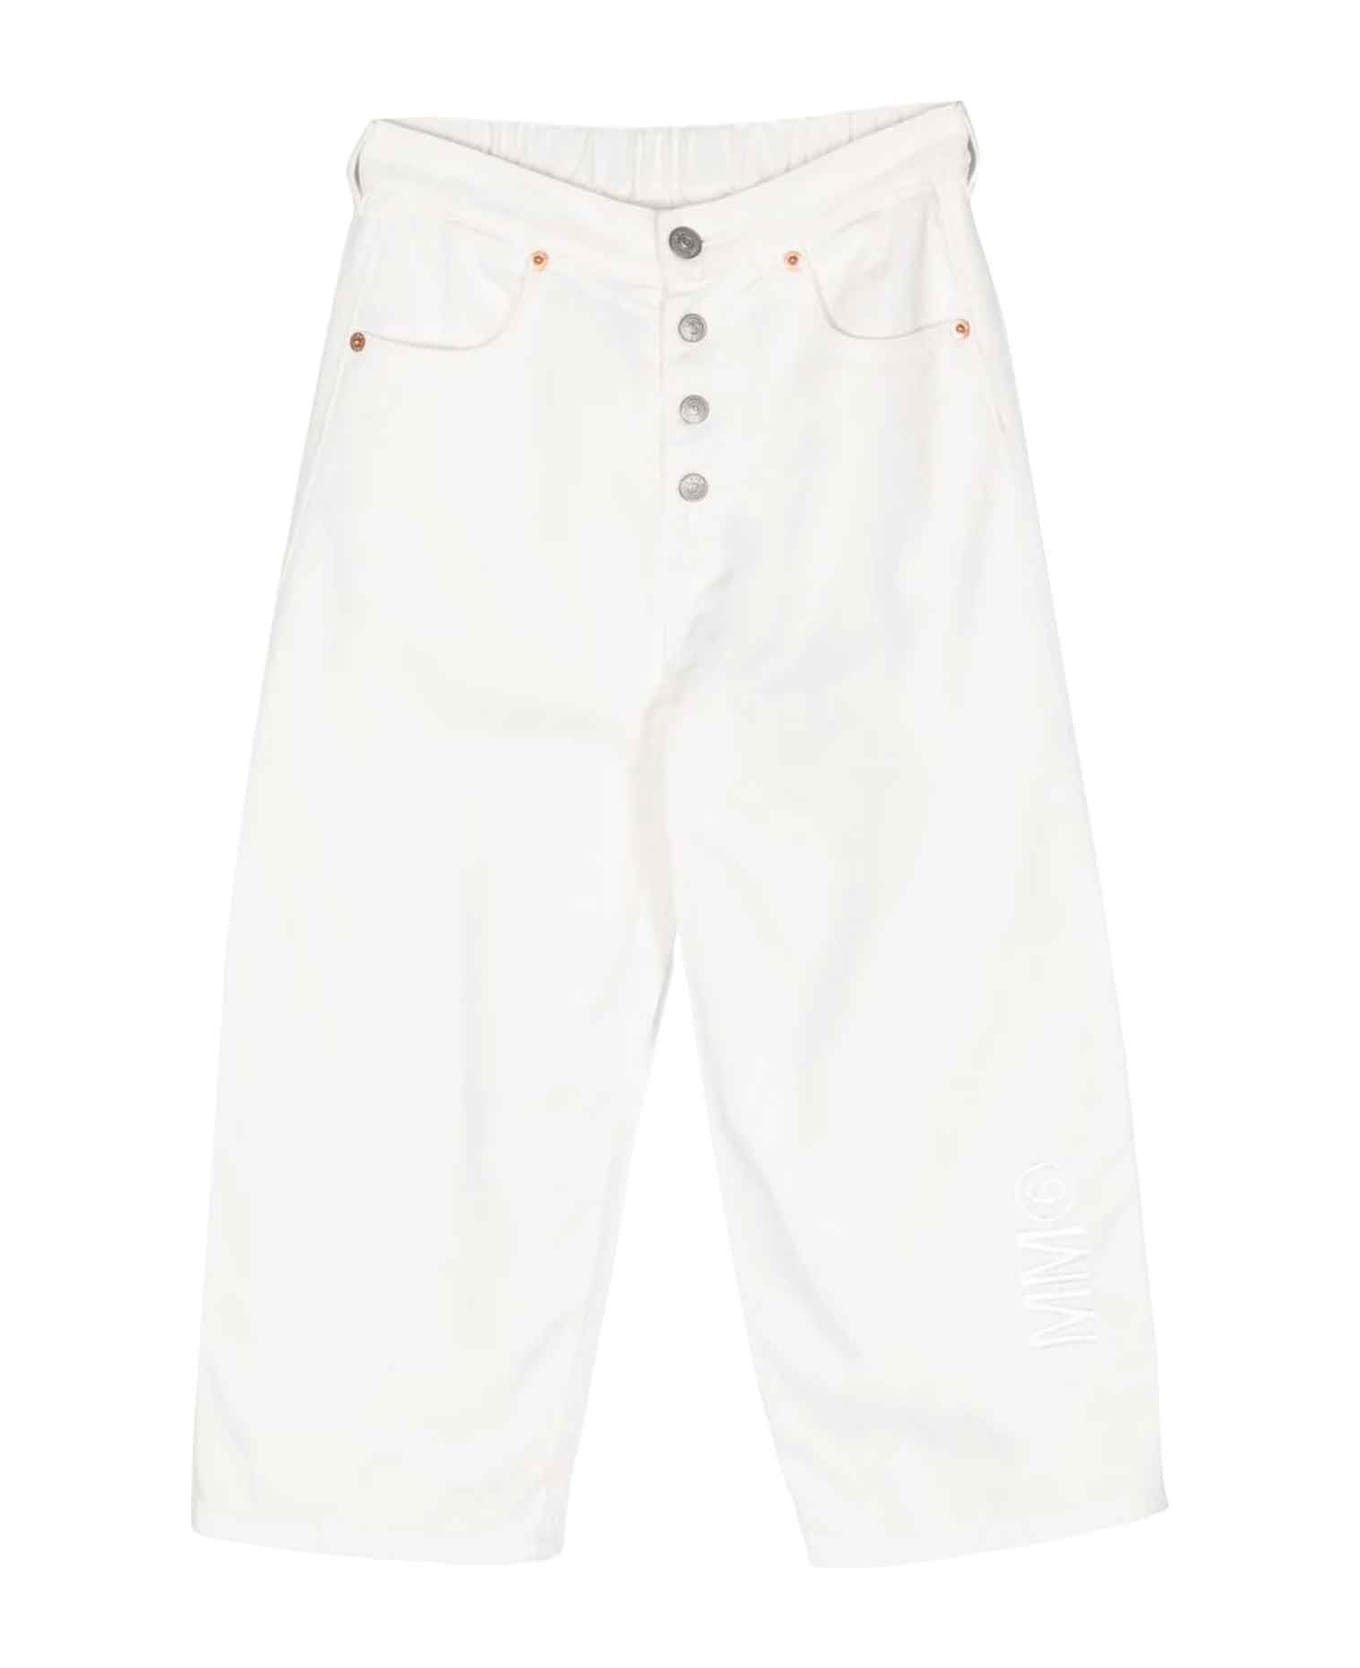 MM6 Maison Margiela White Trousers Unisex - Bianco ボトムス